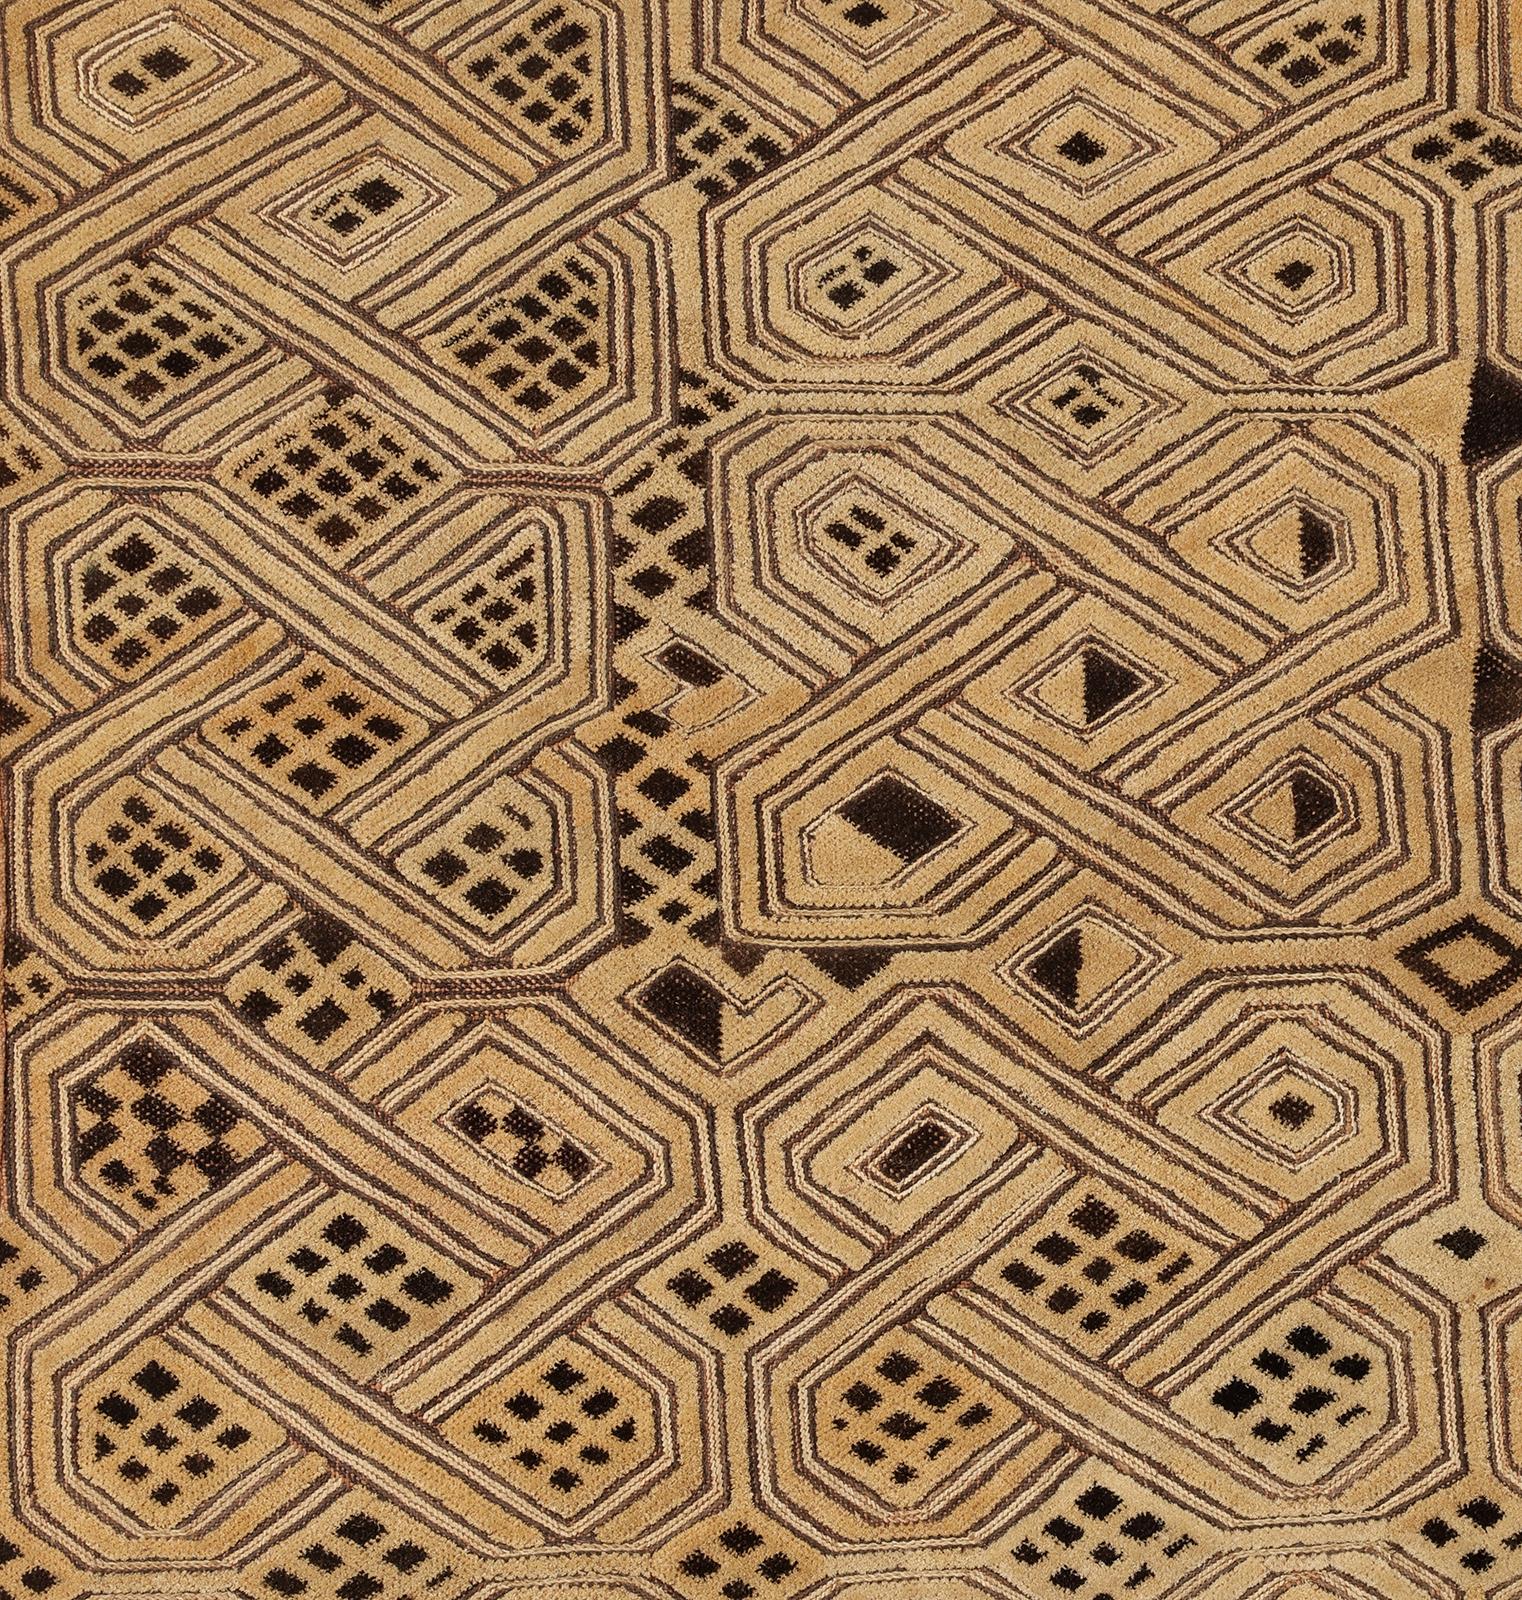 Ein hervorragendes Beispiel für eine  Kuba-Prestige-Tuch aus dem frühen 20. Jahrhundert mit Variationen des Endlosknoten-Motivs, von den Kuba Imbol genannt.